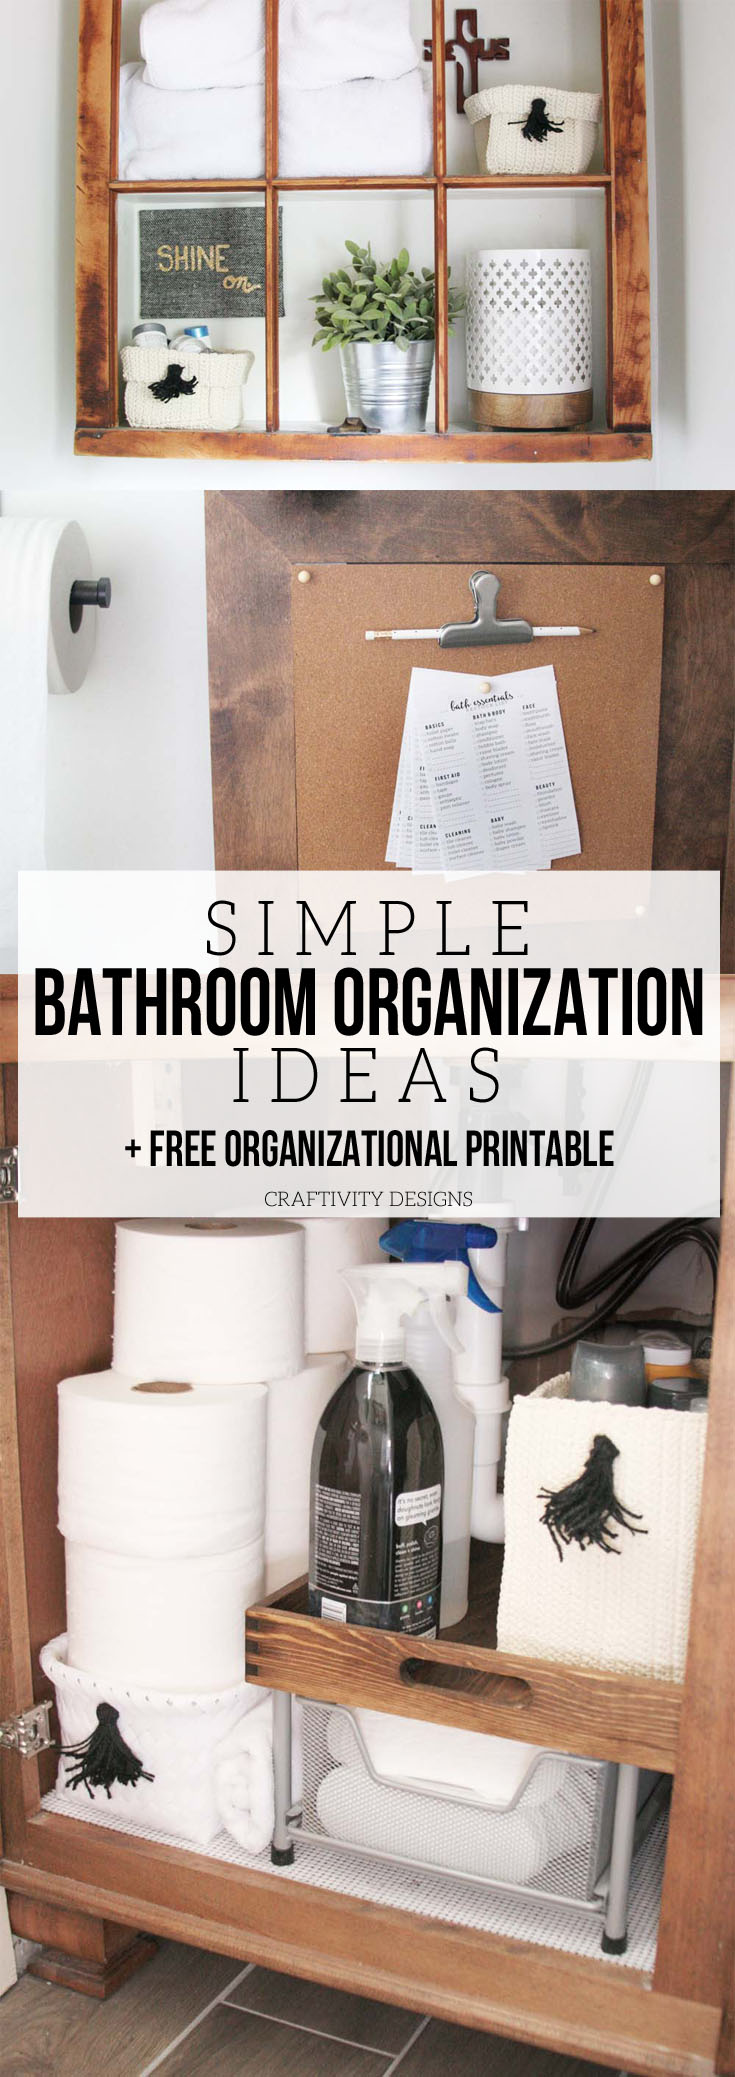 Easy Bathroom Organization Ideas for a quick and stylish refresh. @CraftivityD